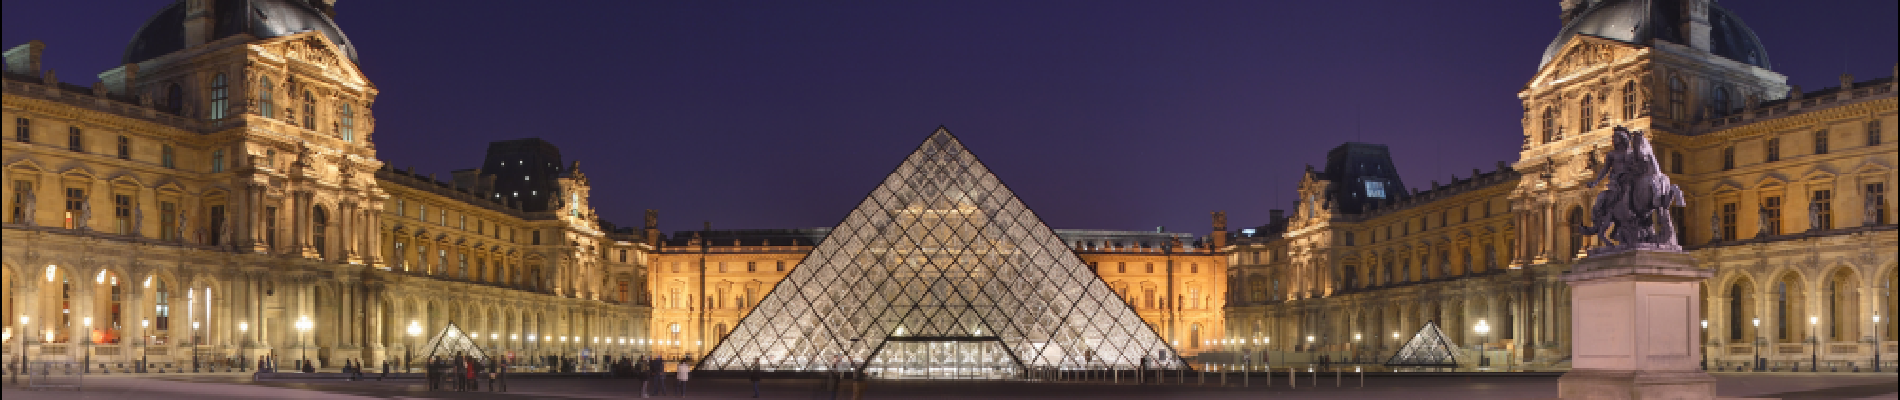 POI Paris - Pyramide du Louvre - Photo